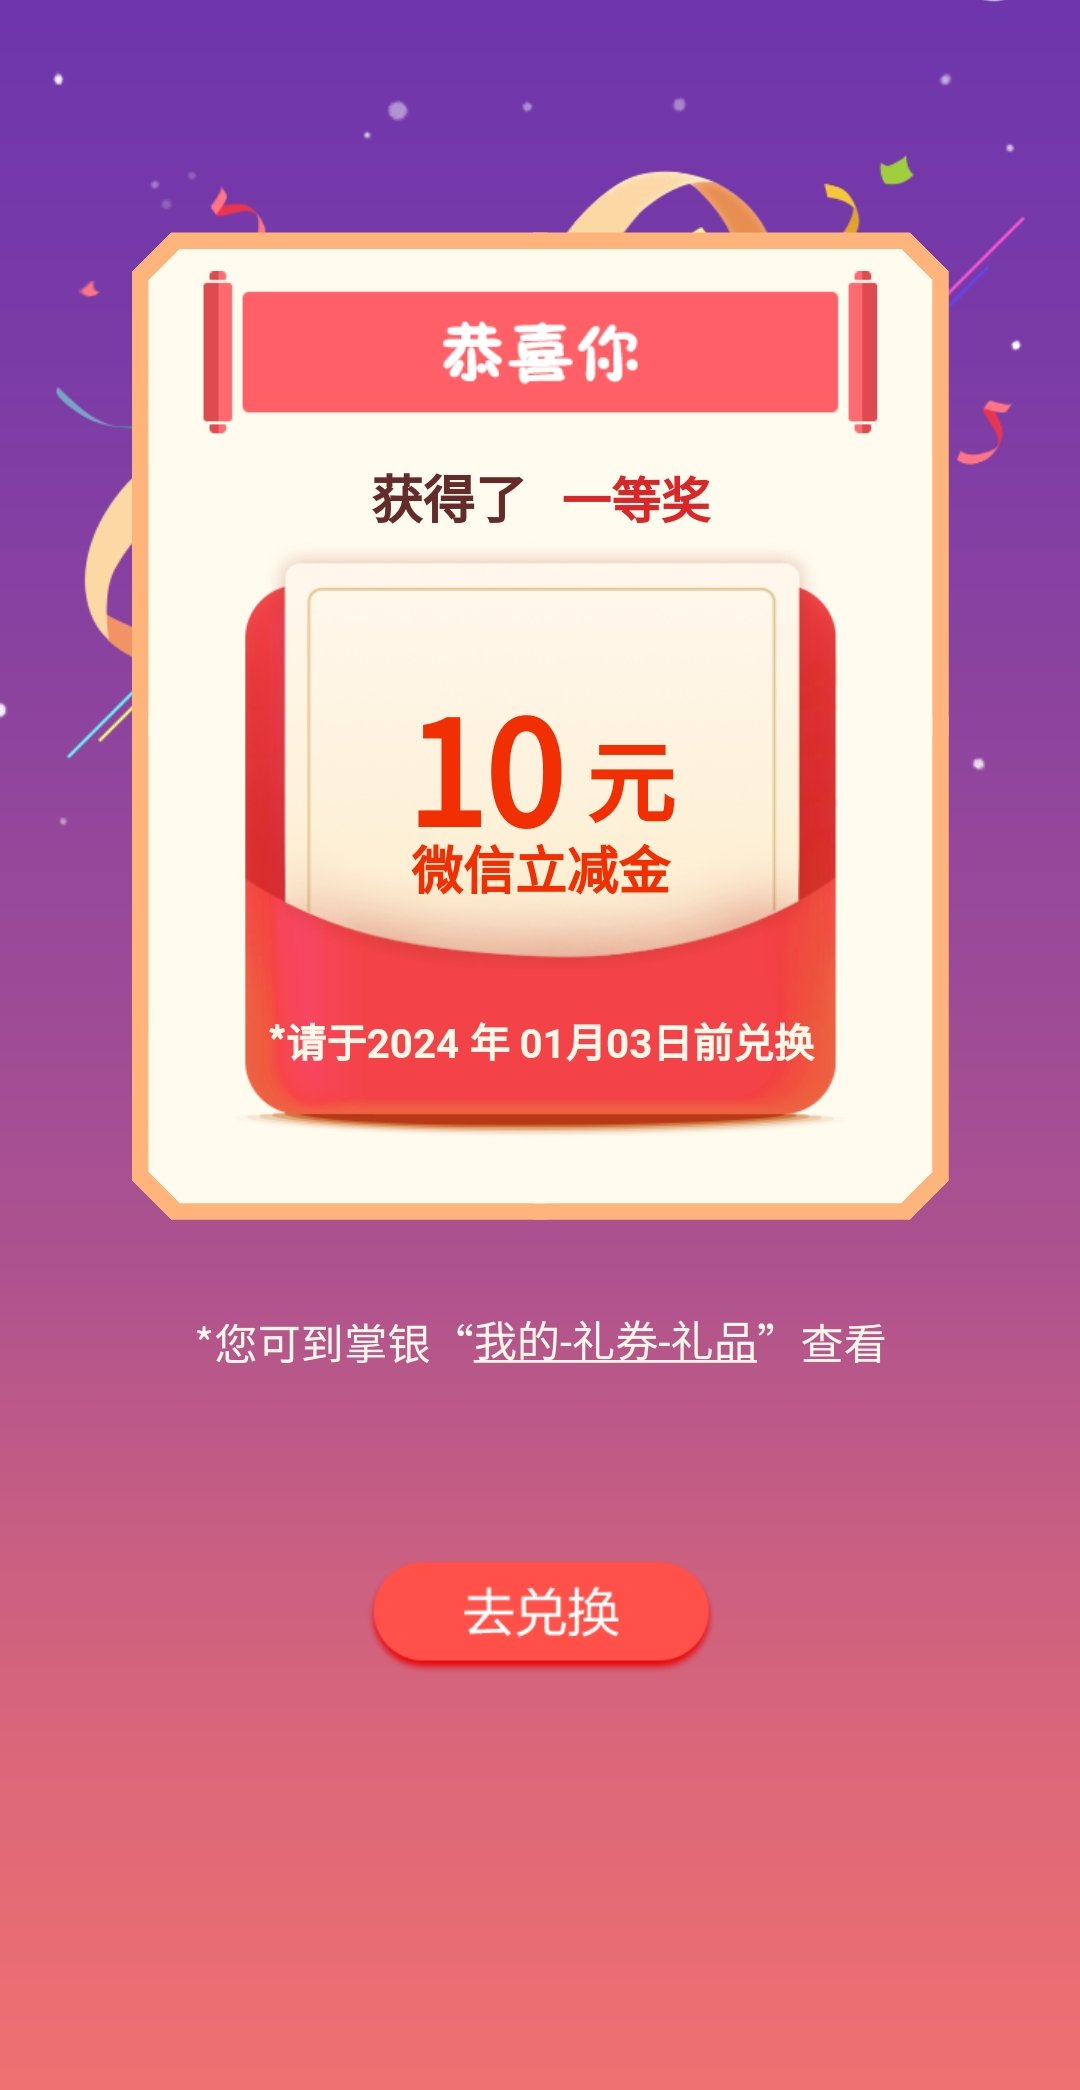 一月超柜更新（飞安徽）必中10微信立减金_福利红包